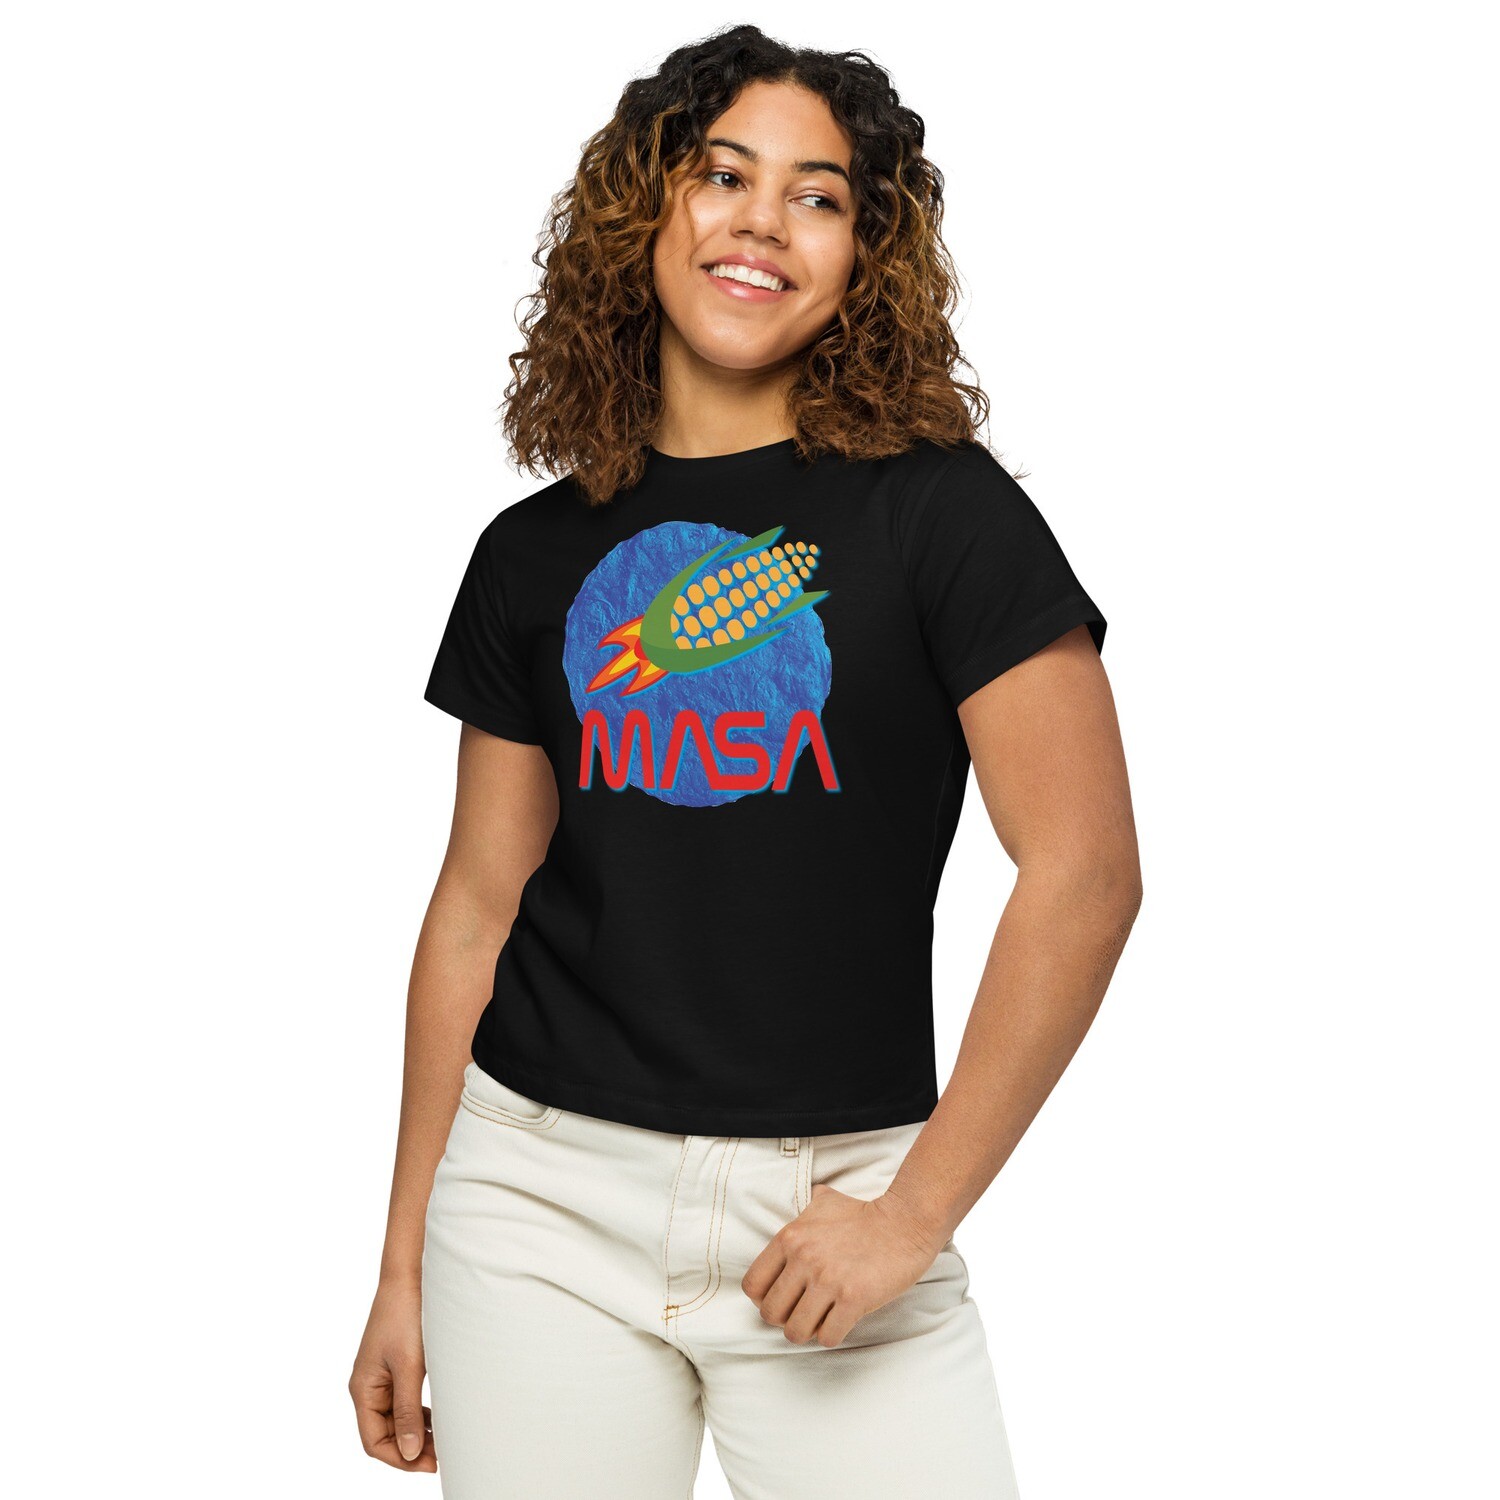 MASA women’s high-waisted t-shirt